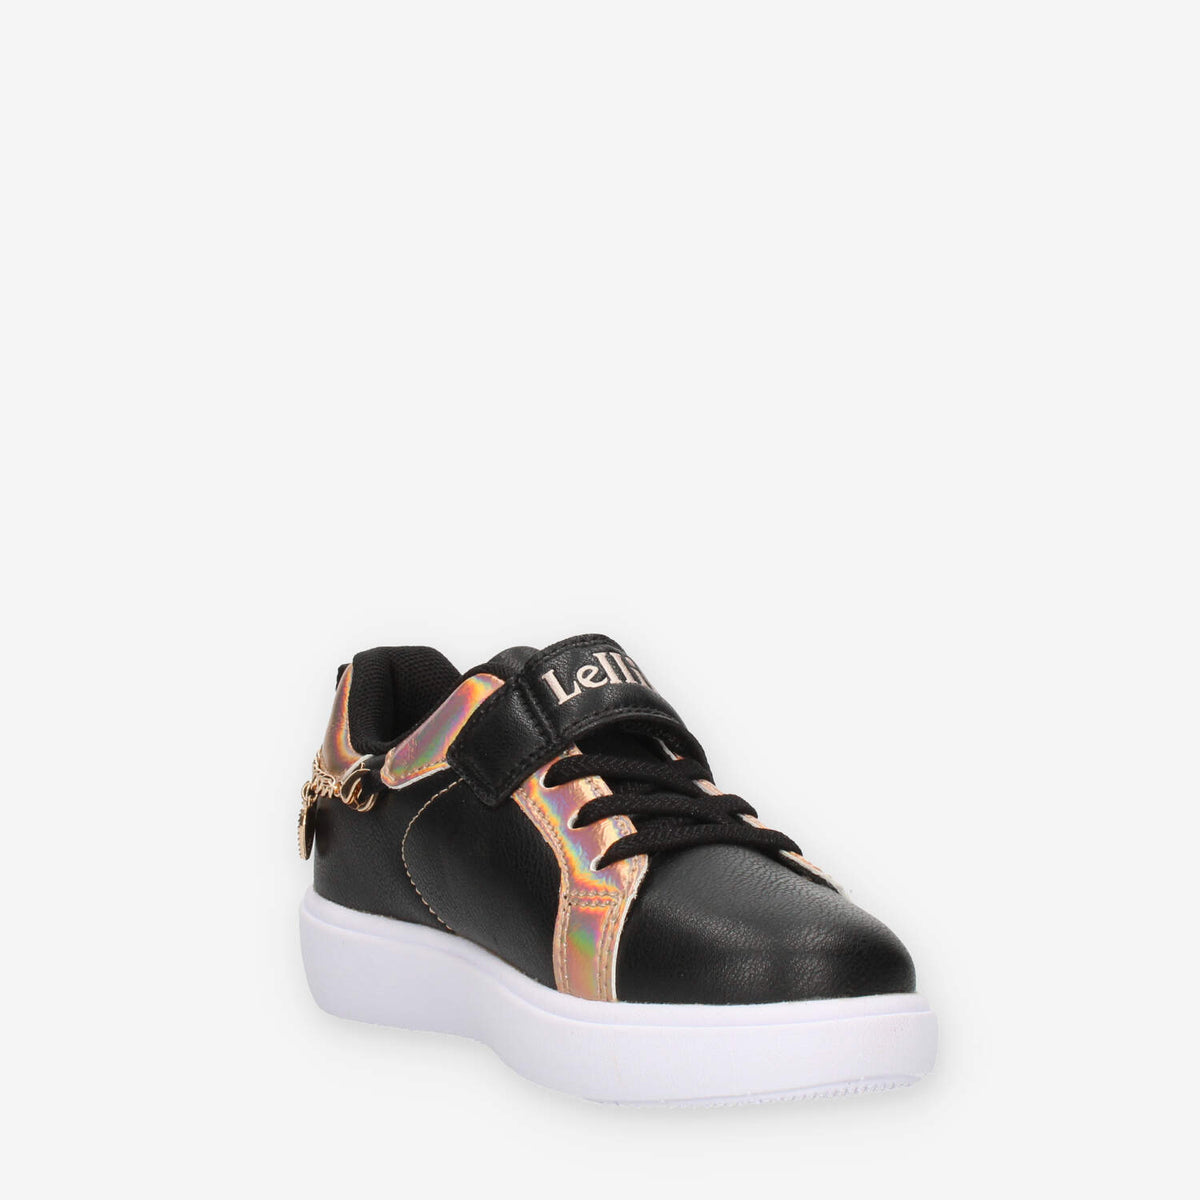 Lelli Kelly Gioiello Sneakers nere e oro rosa